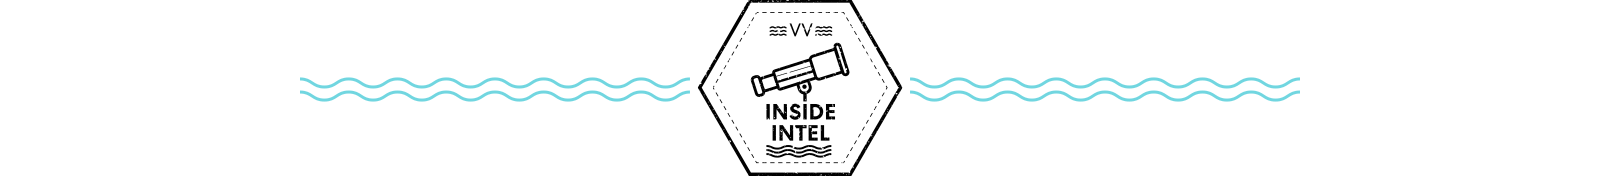 Insider Intel Divider